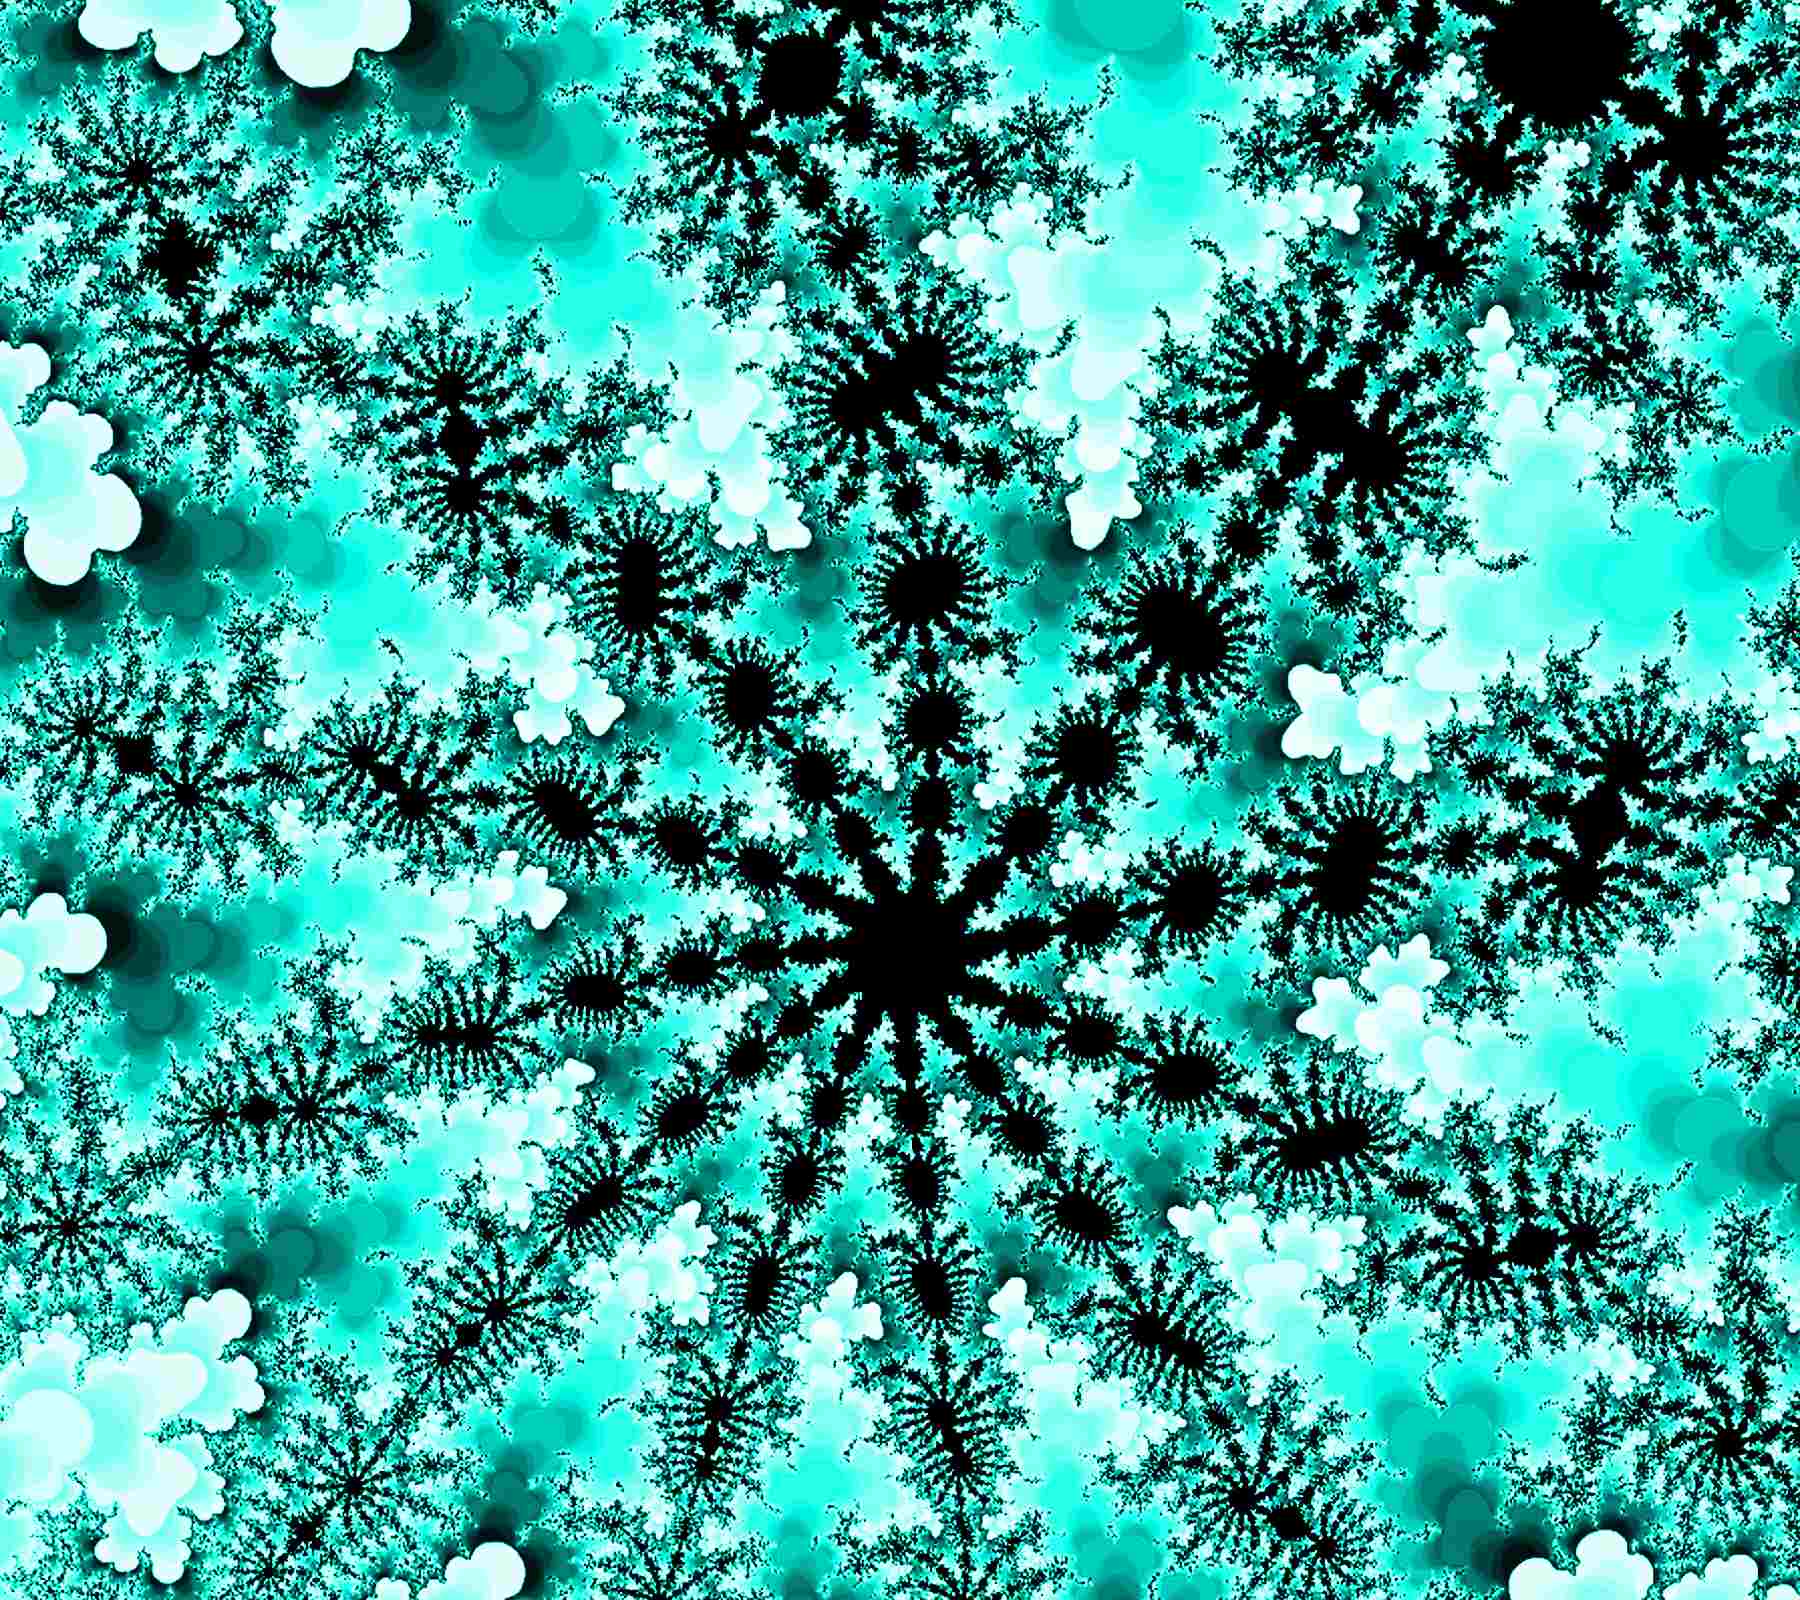 Turquoise Mandelbrot Fractal Background Image